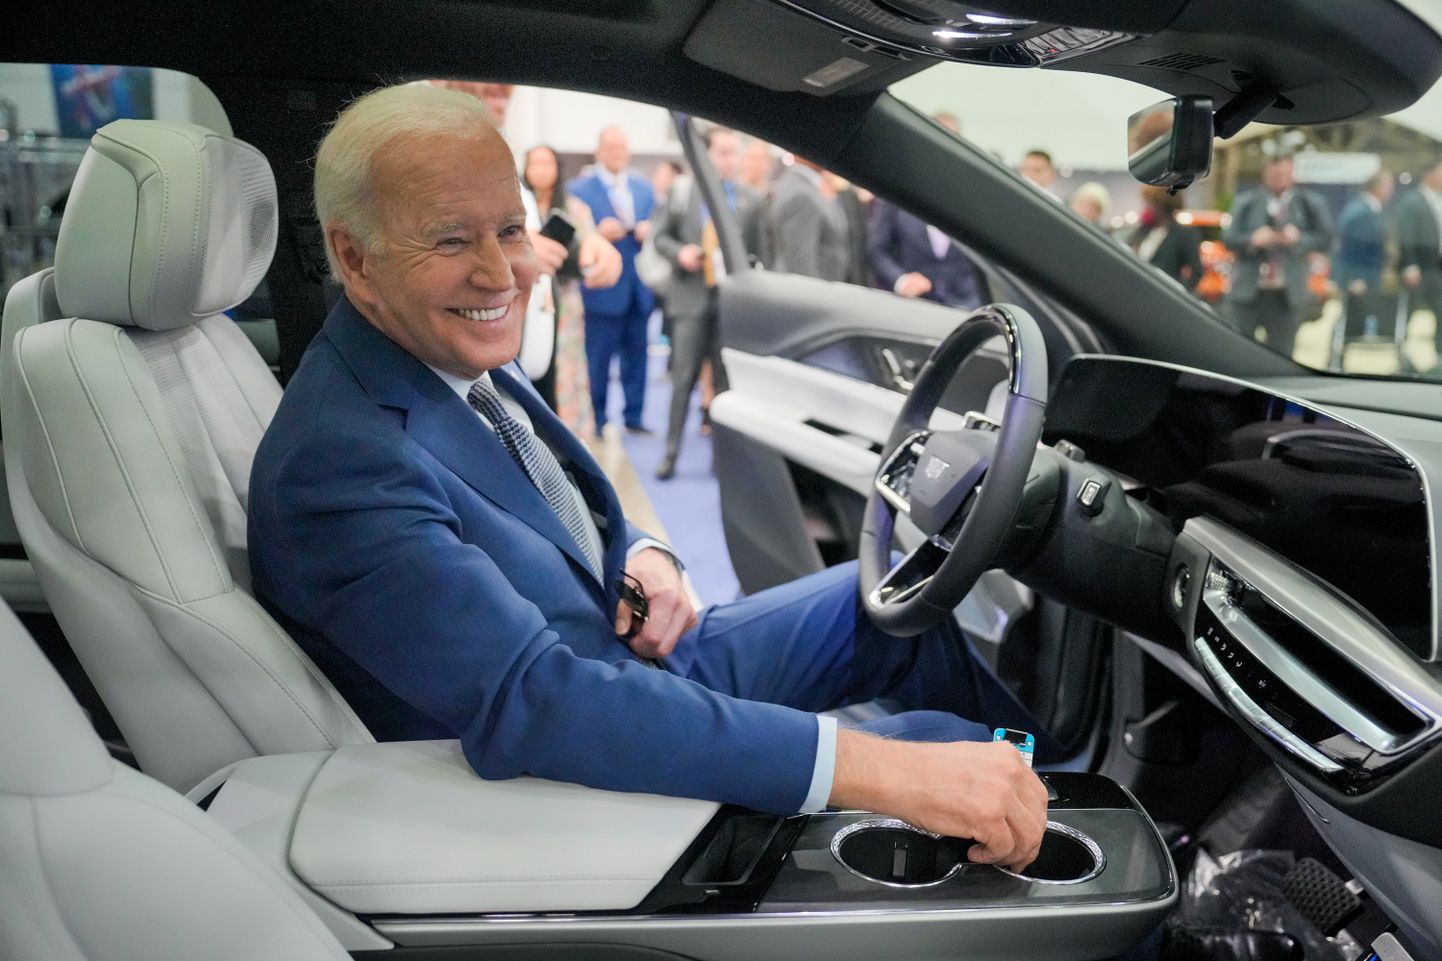 USA president Joe Biden proovib 14. septembril 2022 Põhja-Ameerika automessil täiselektrilist luksusmaasturit Cadillac Lyriq